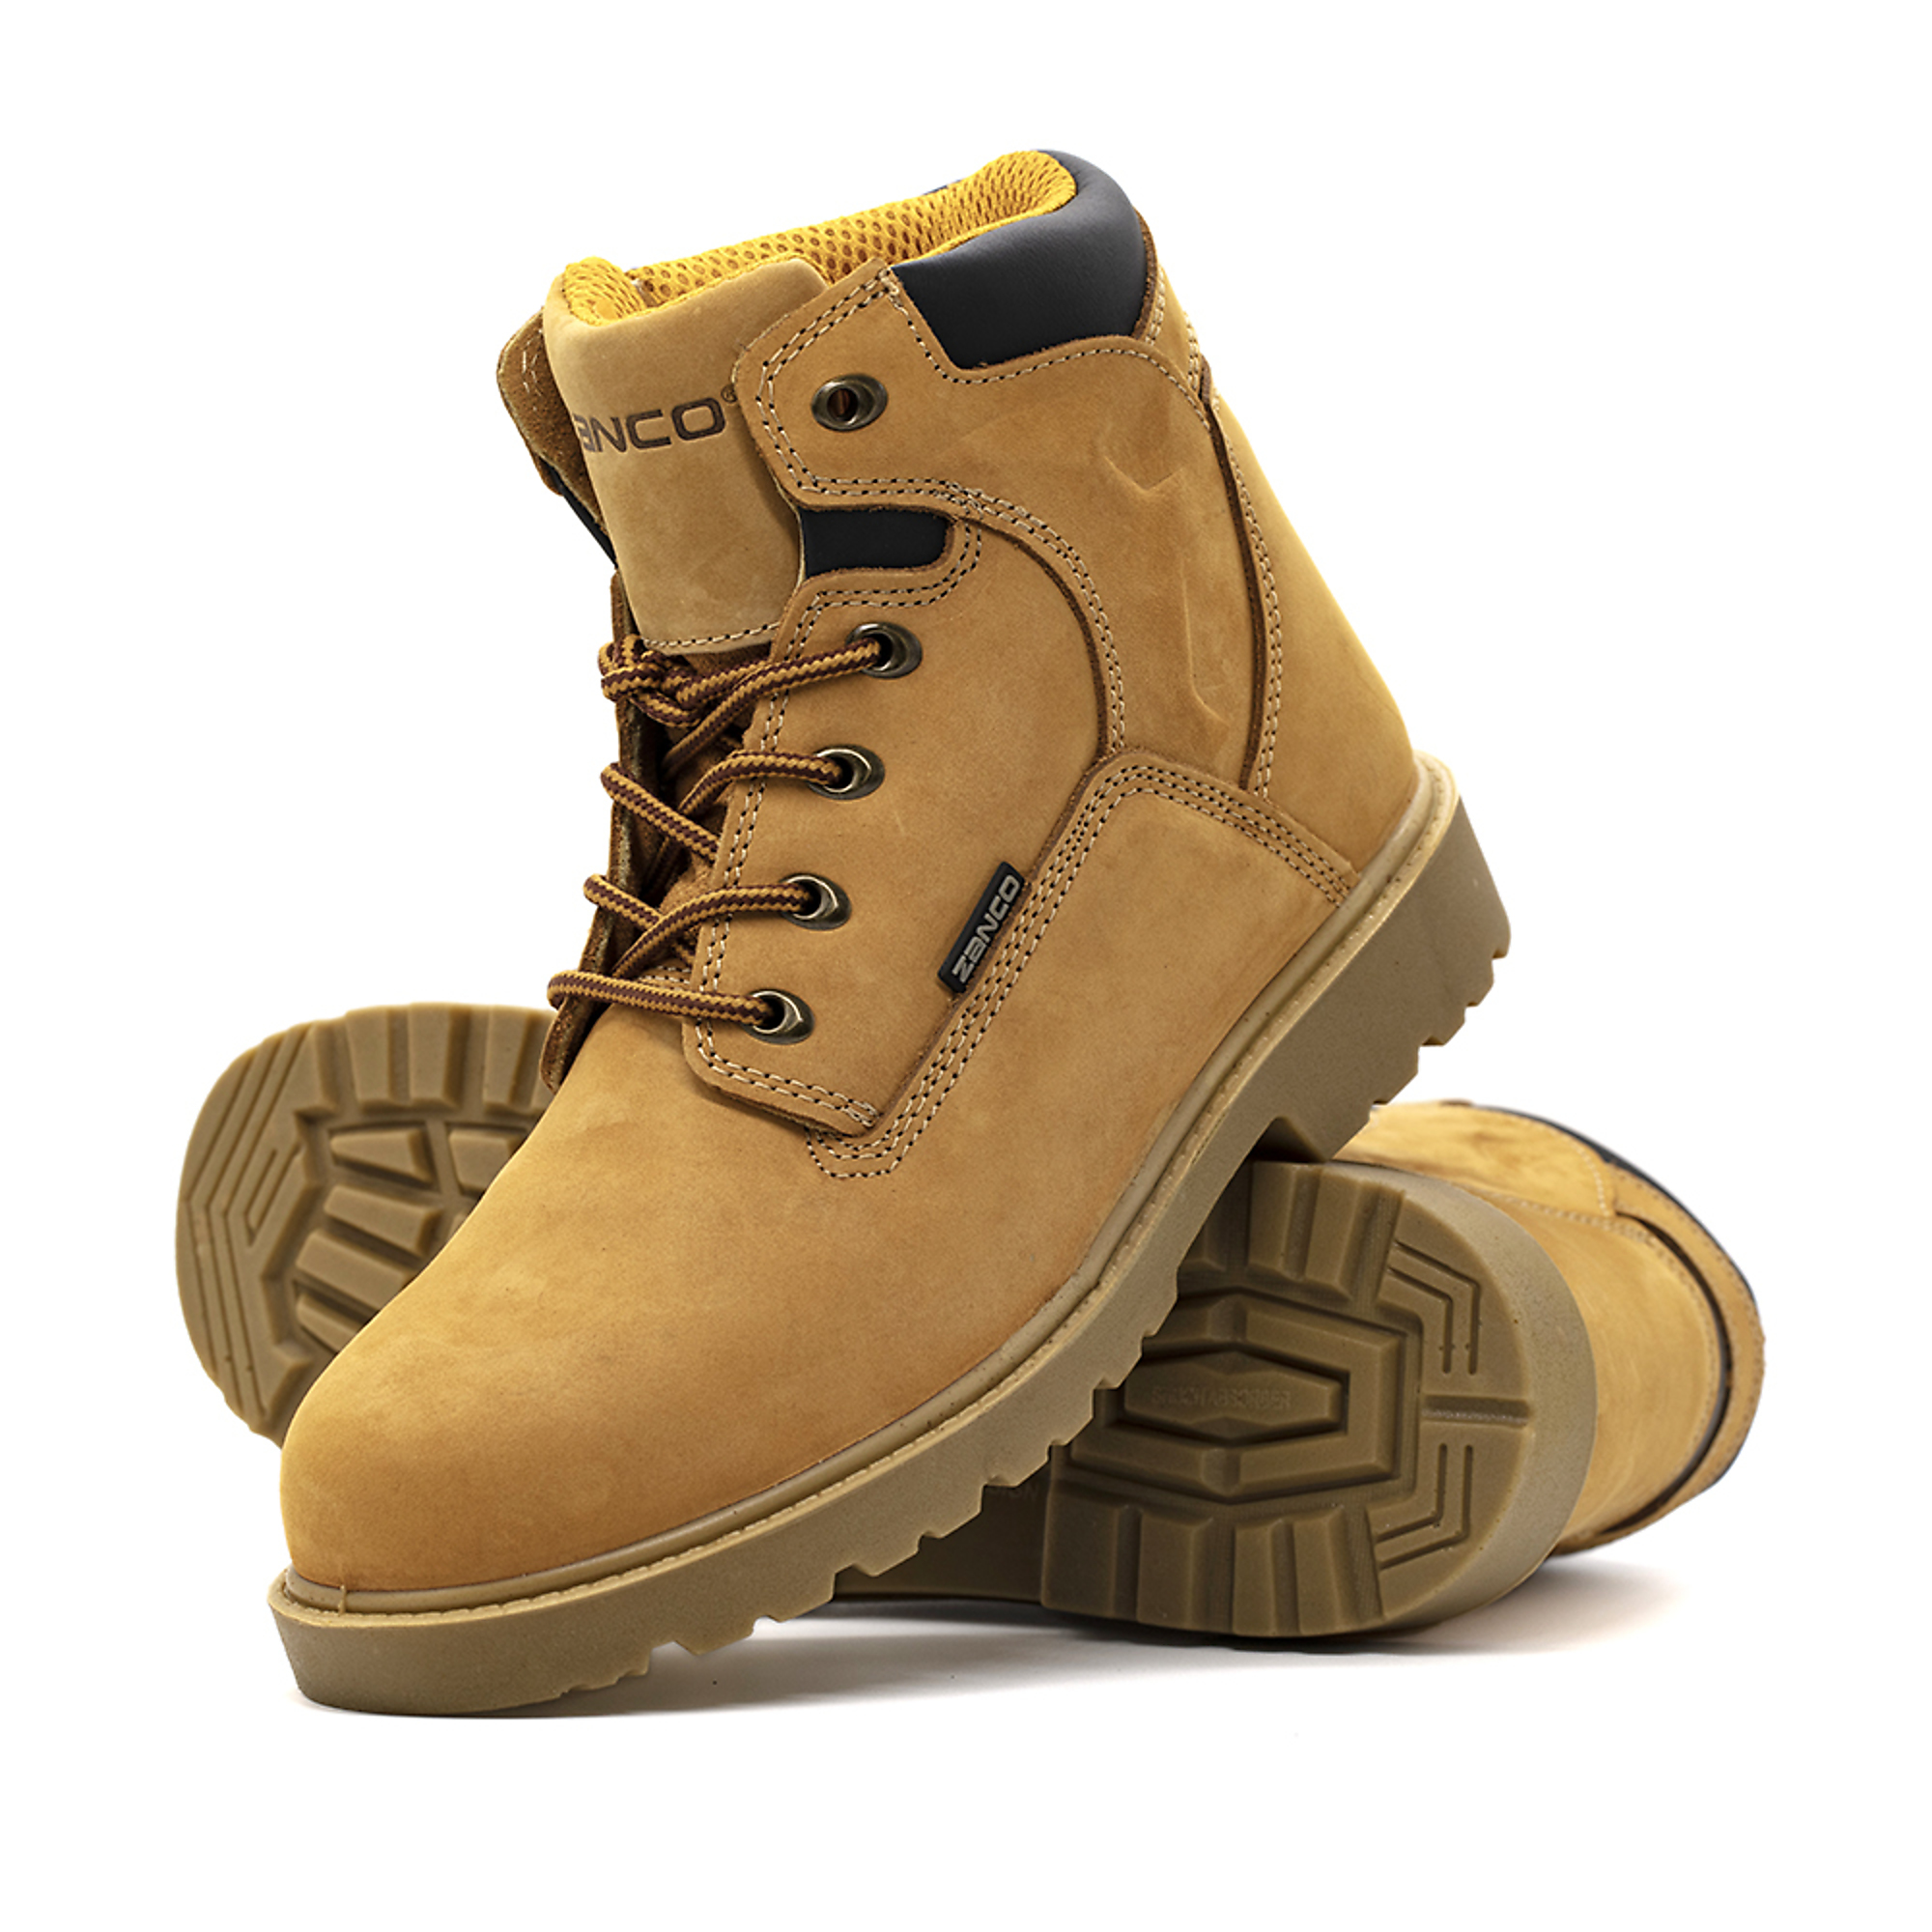 Zanco, Men's Waterproof,Steel toe,EH,Safety boots, Size 7, Width Medium, Color WHEAT, Model 7681-SE-7